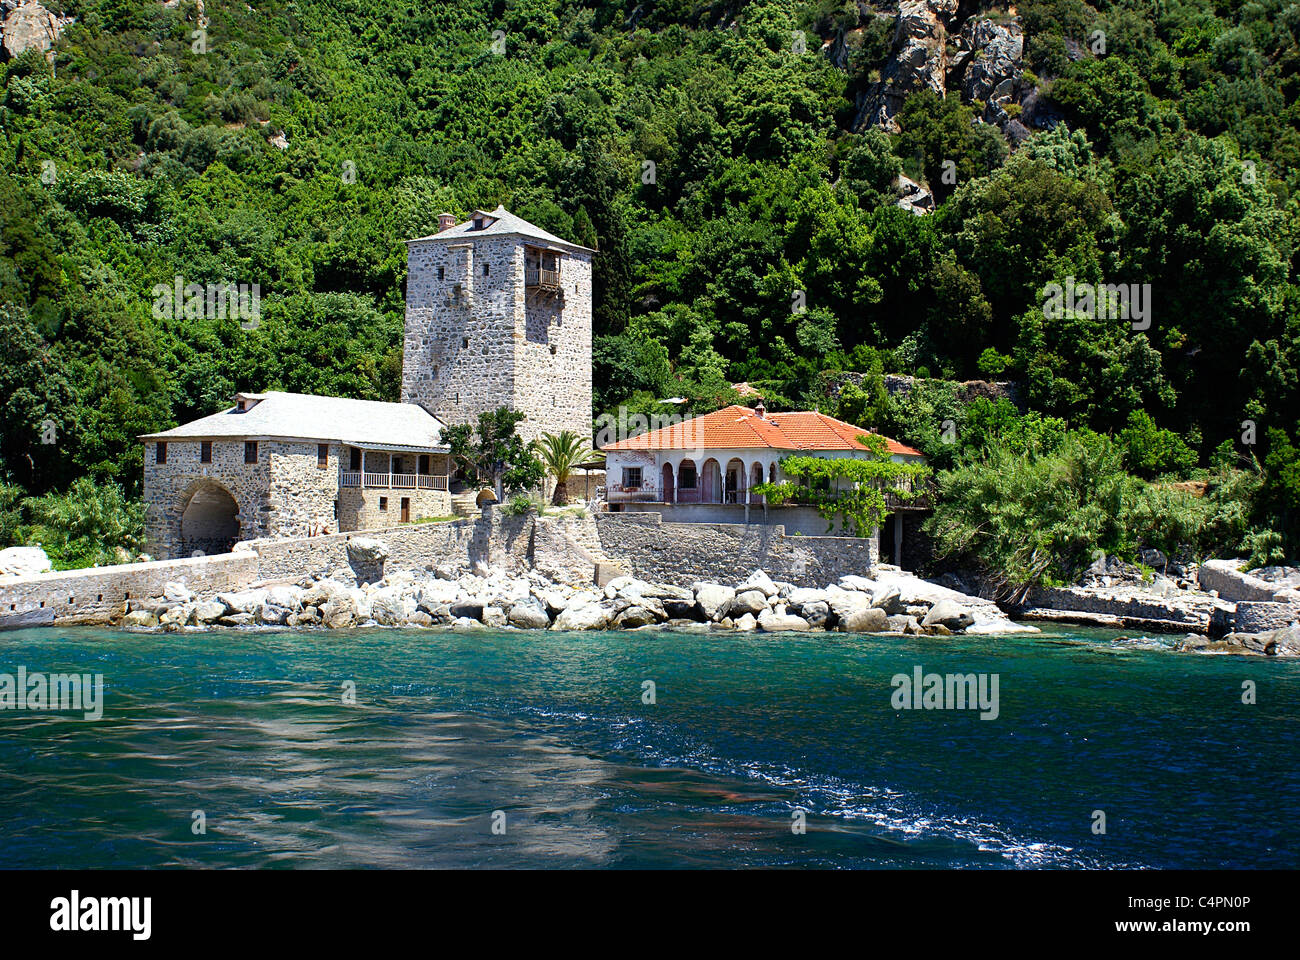 Monastery Simonopetra on Mount Athos, Chalkidiki, Greece Stock Photo